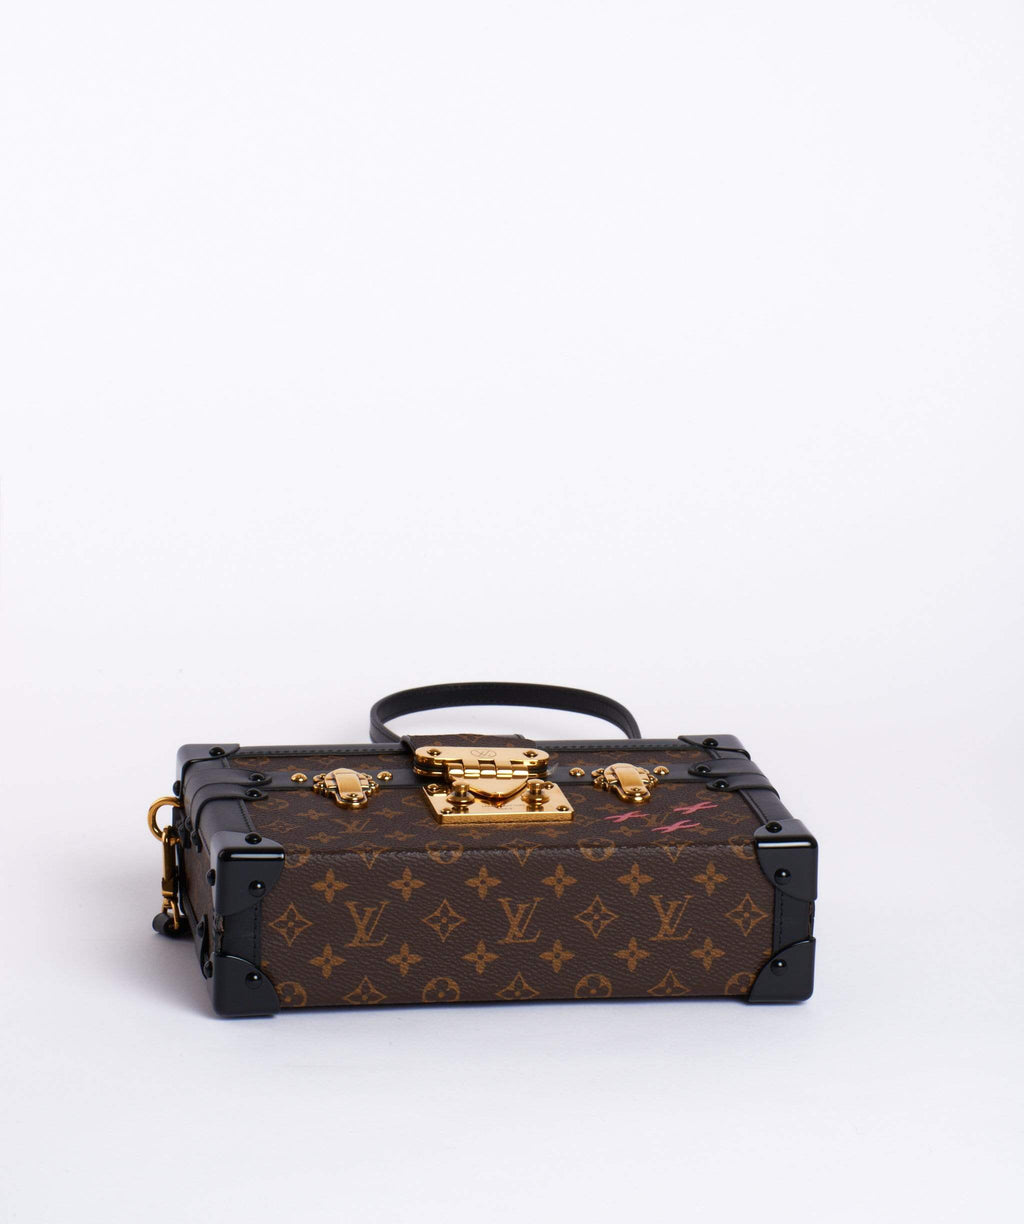 Louis Vuitton Petite Malle – The Luxe Pursuit